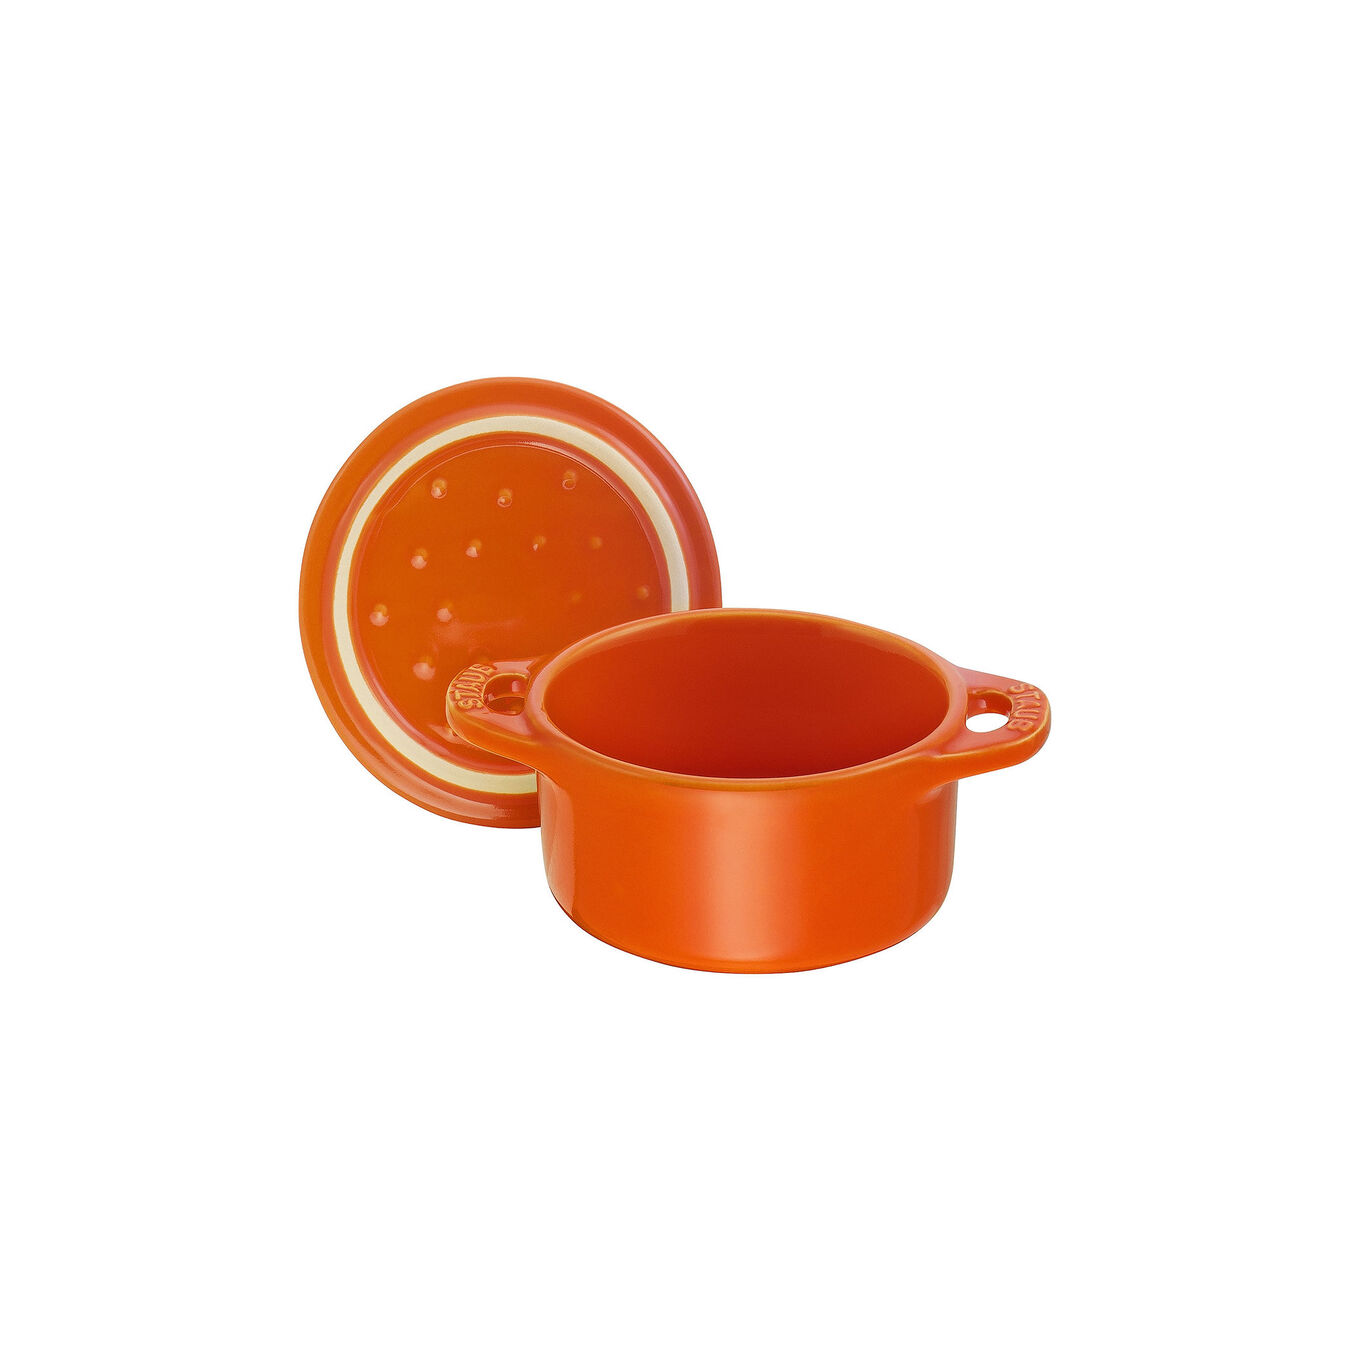 Mini Cocotte 10 cm, rund, Orange, Keramik,,large 6